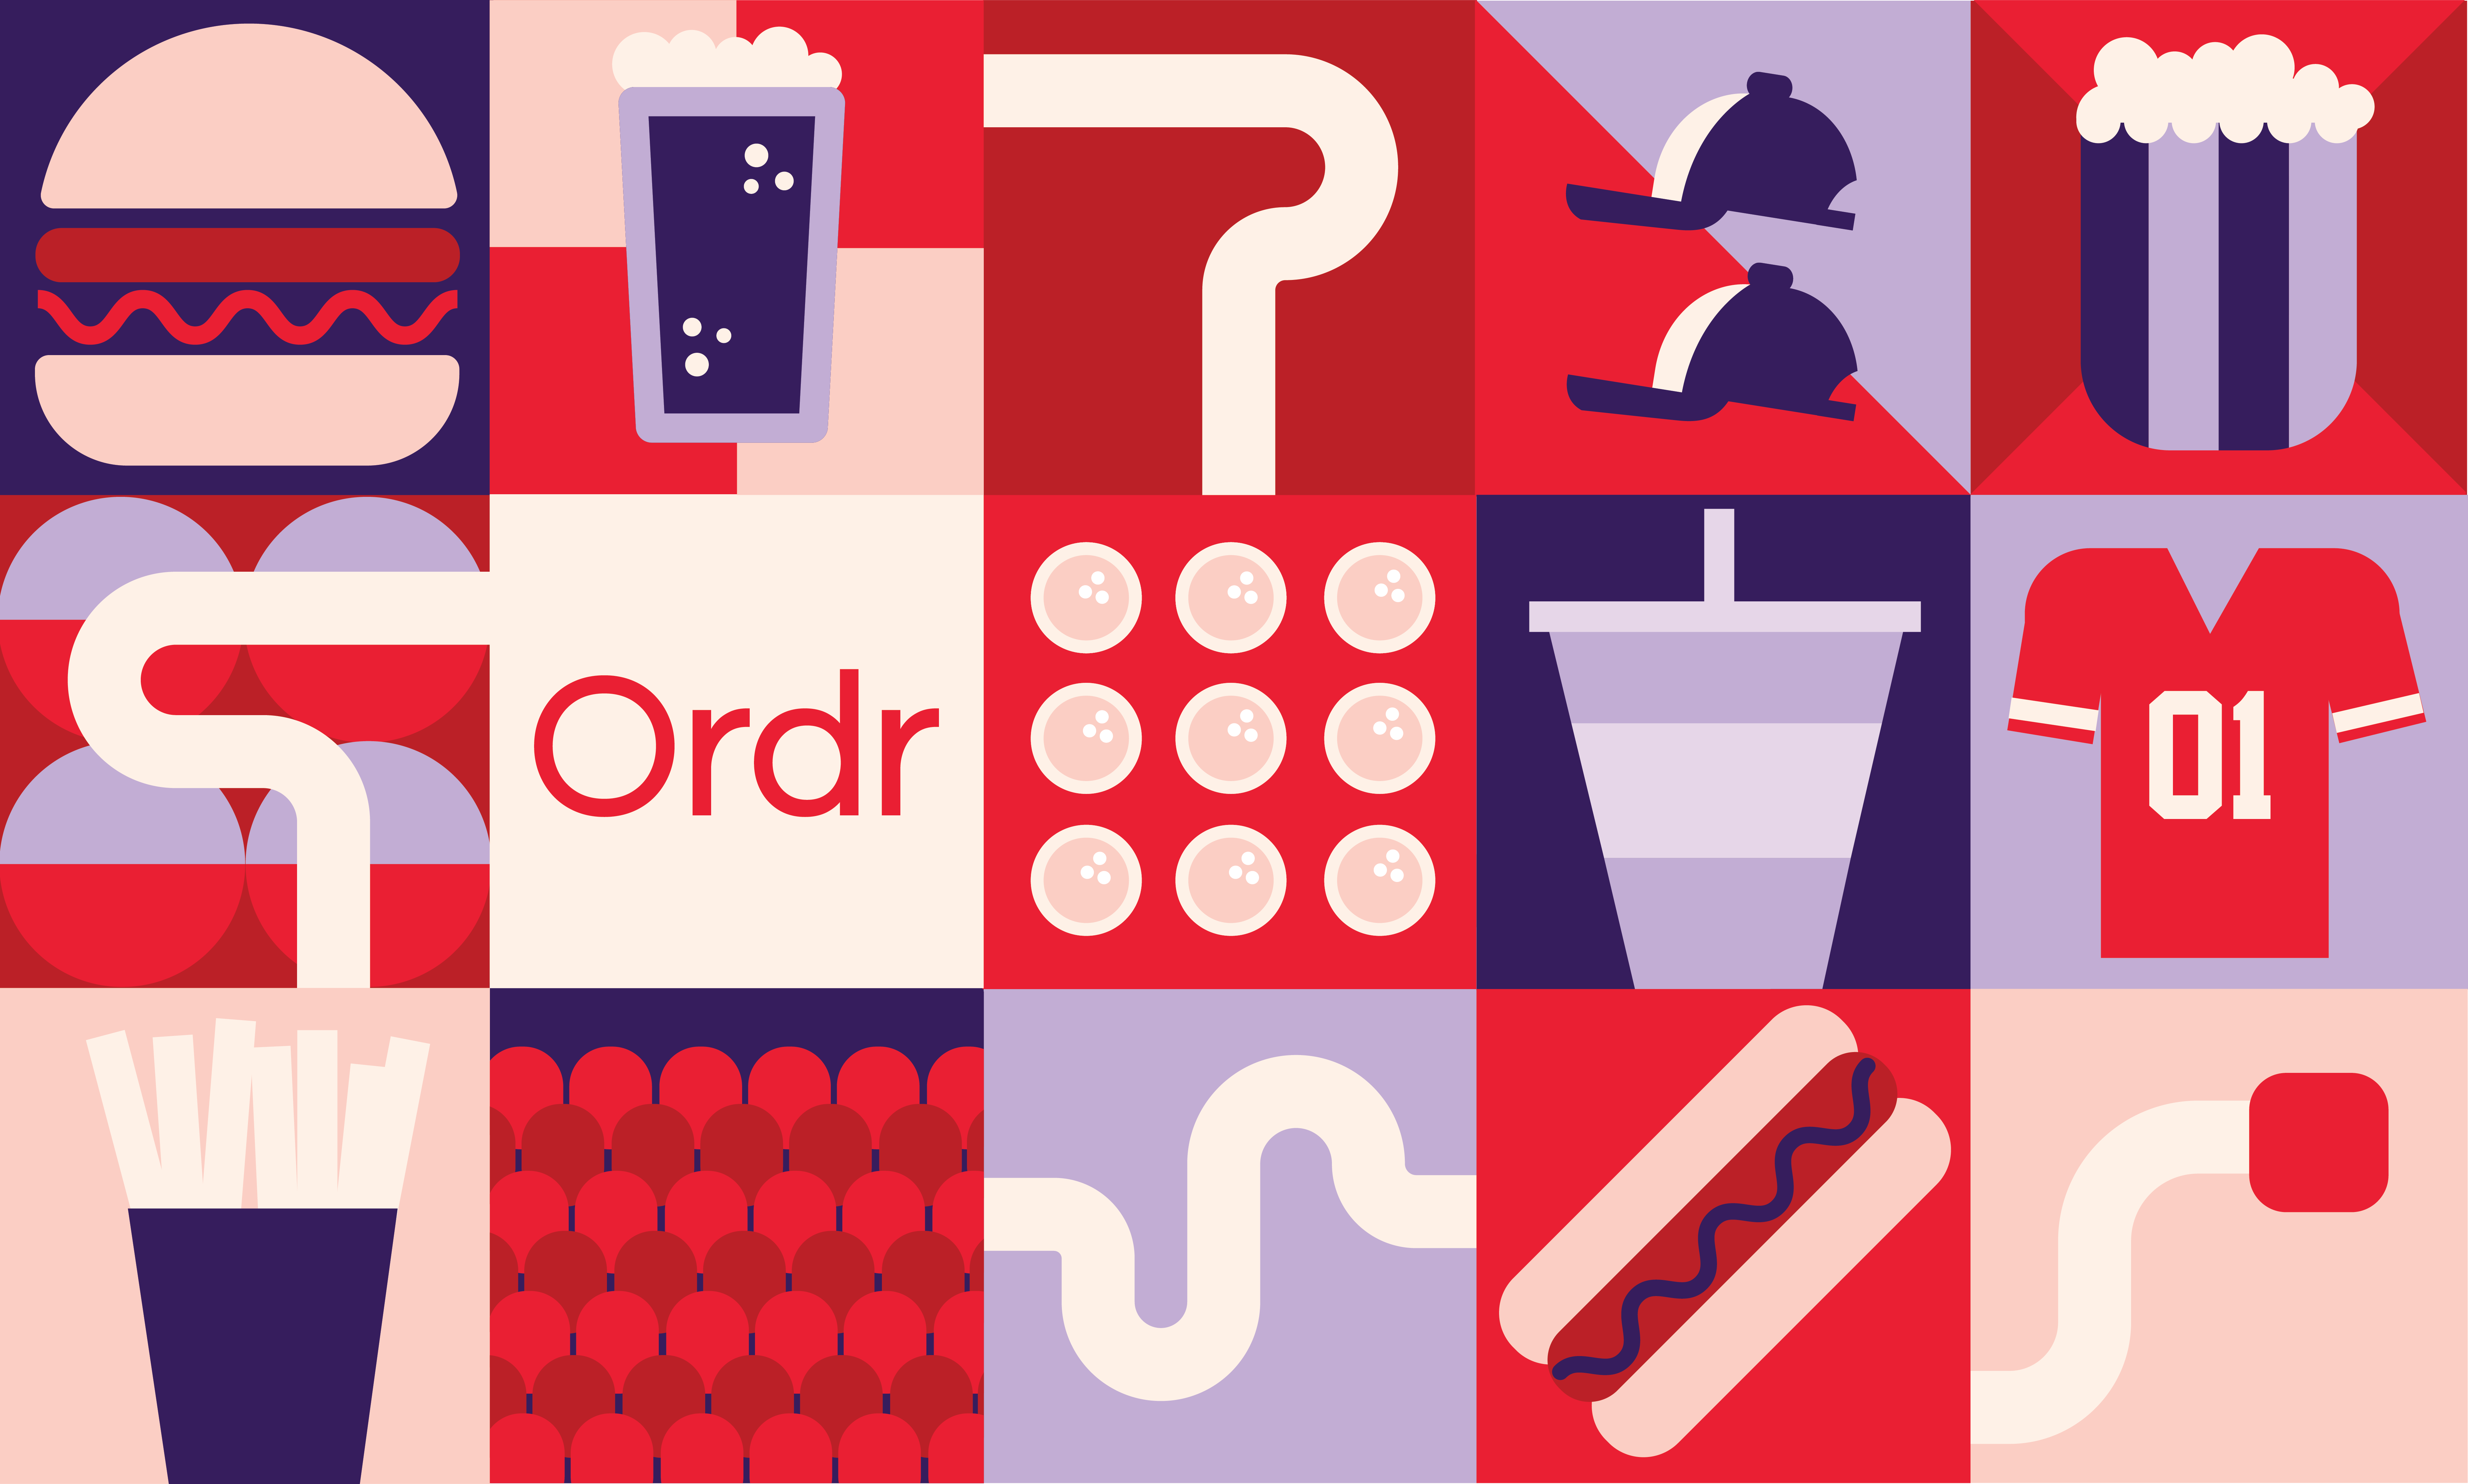 Ordr-Grid Illustration_horizontal (1)